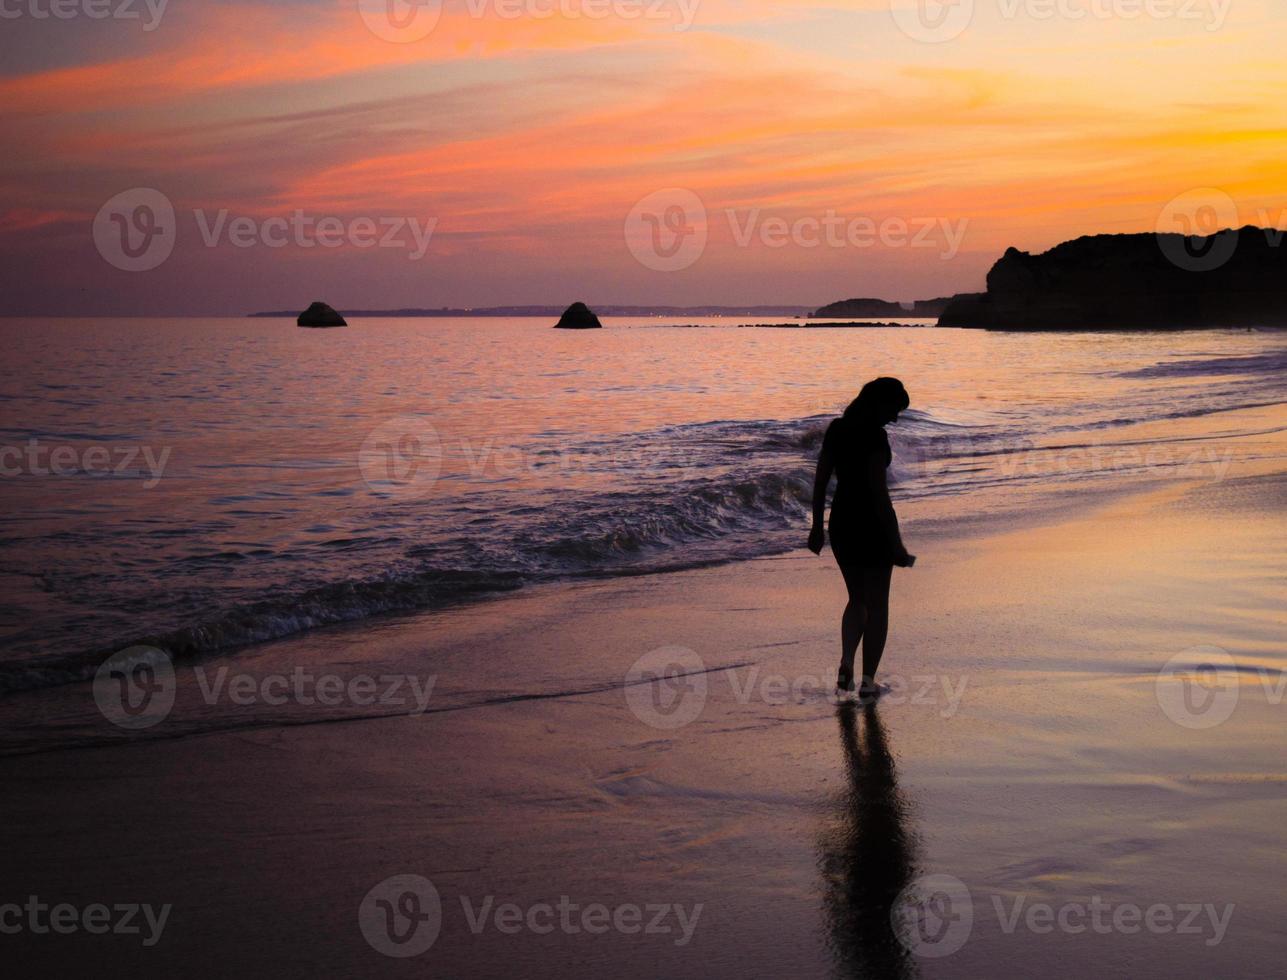 portugal, algarve, les plus belles plages de portimao, praia da rocha, coucher de soleil sur l'océan atlantique photo